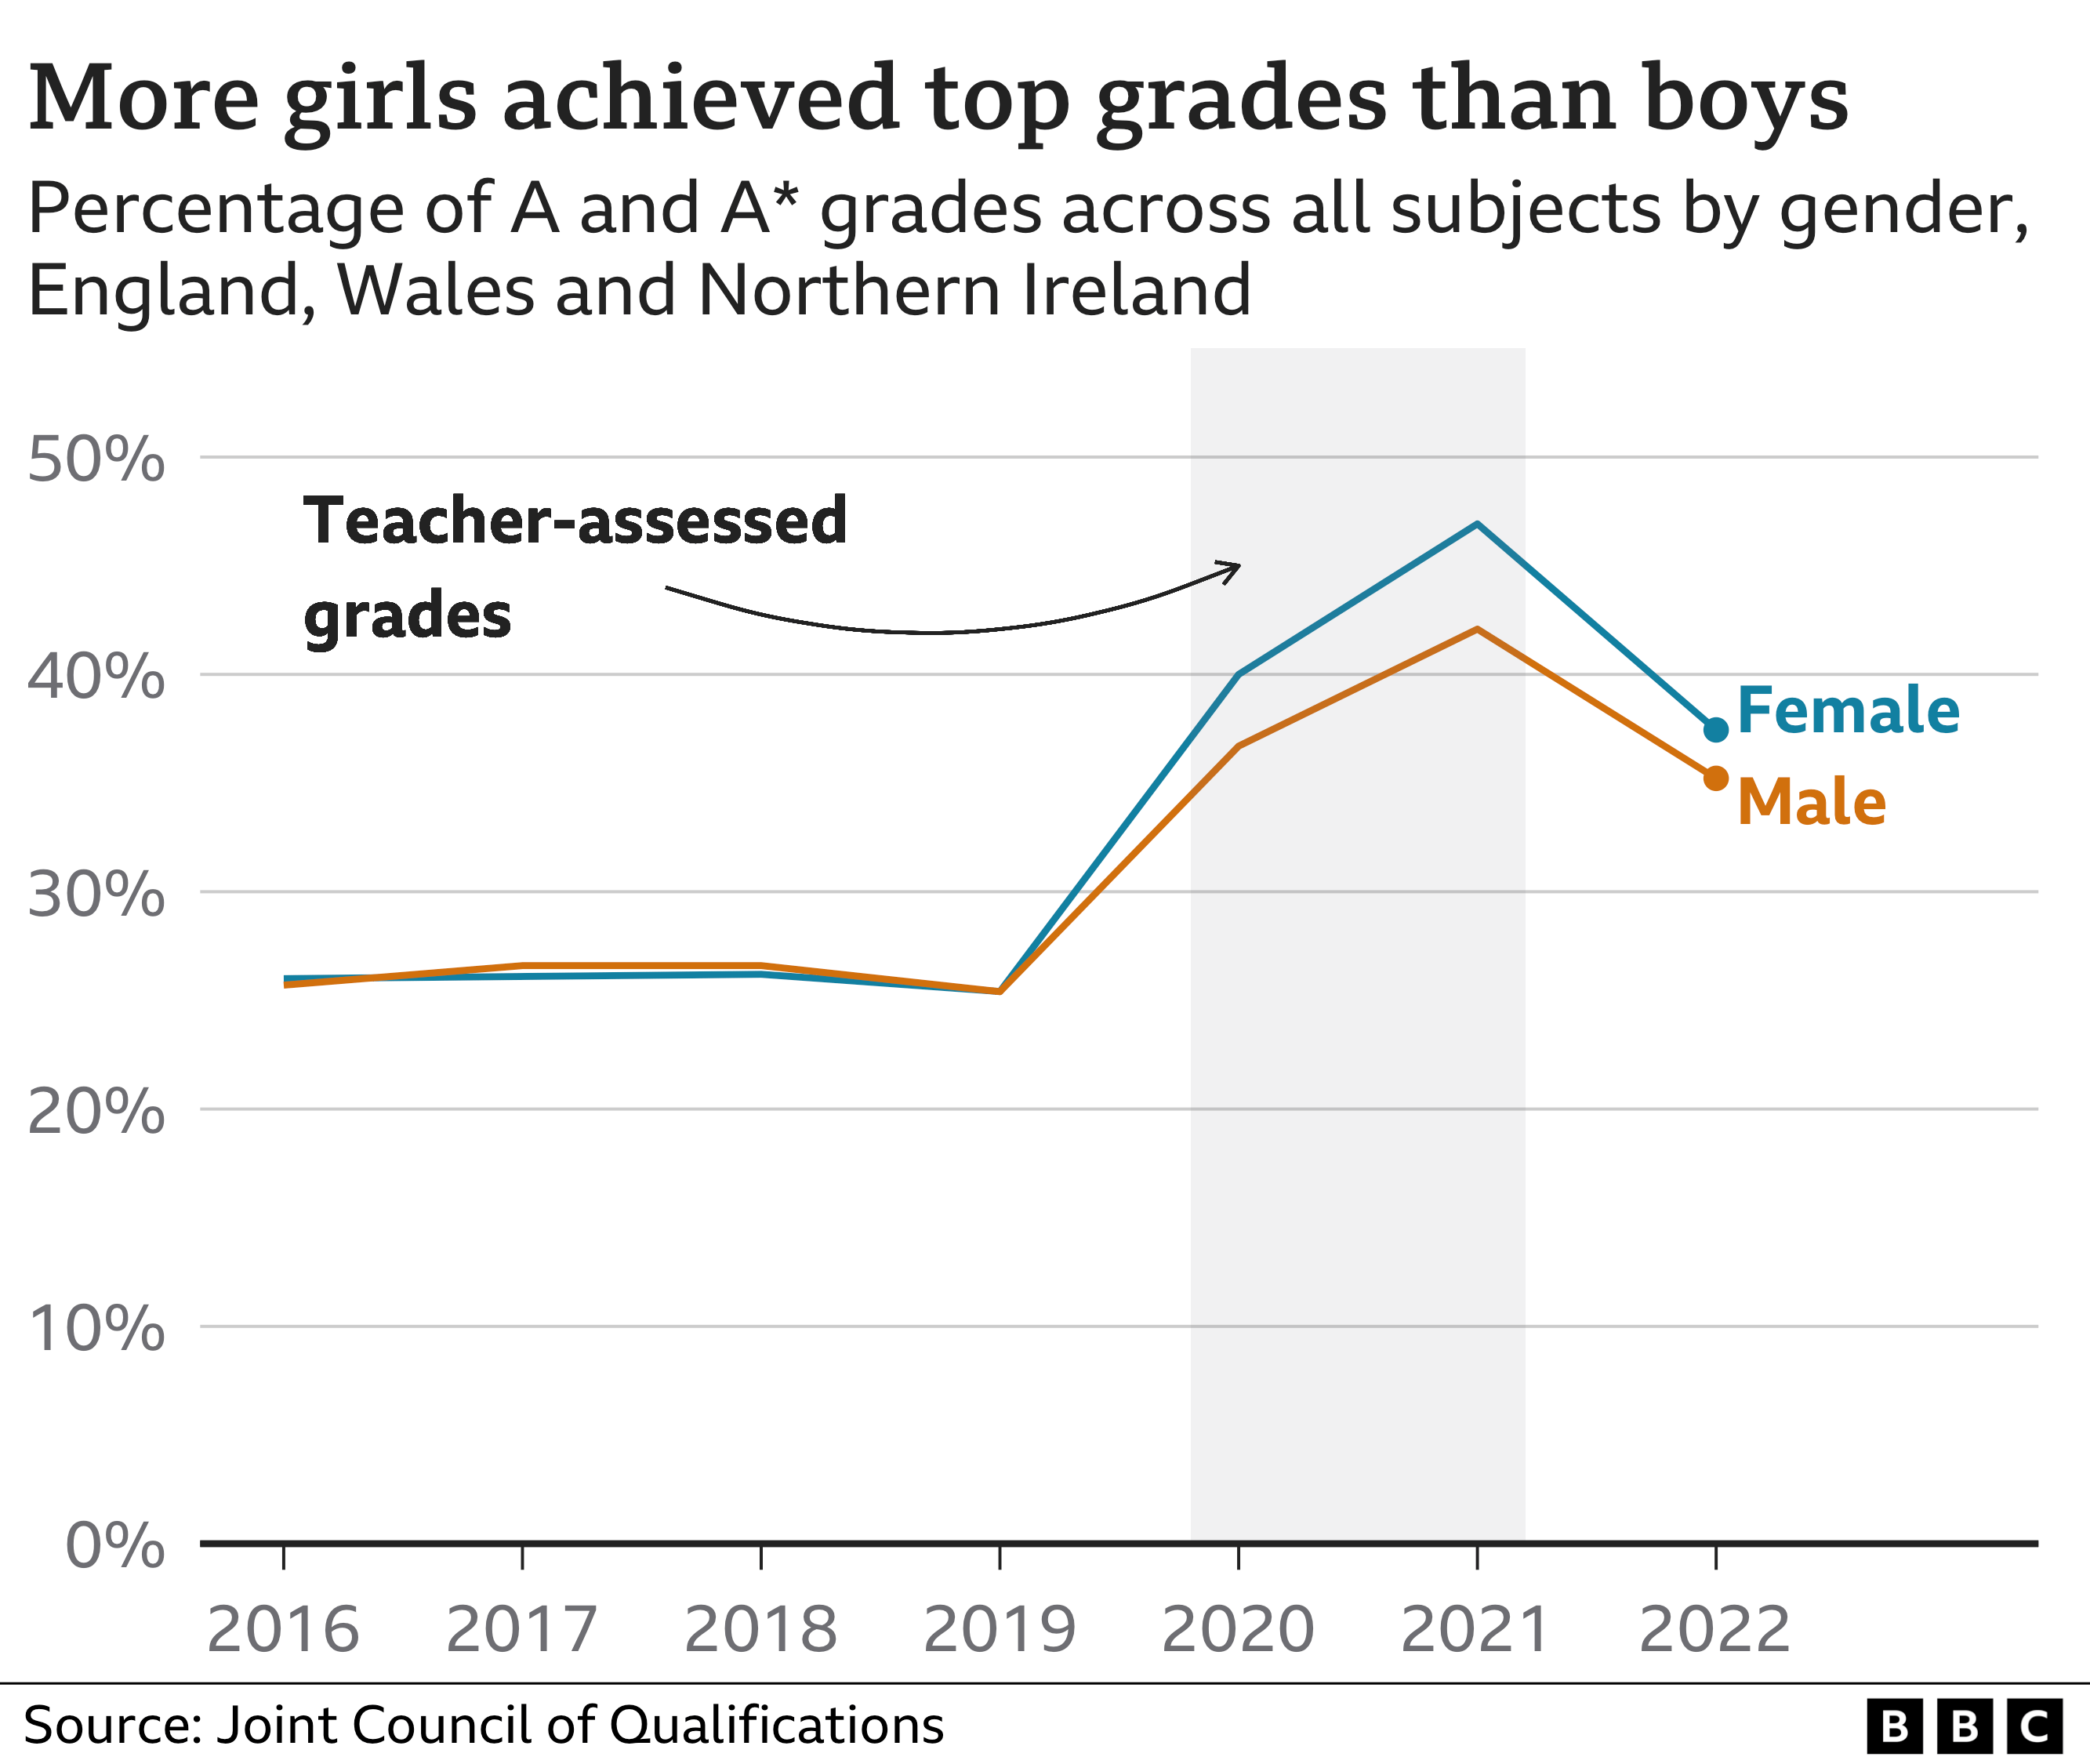 Диаграмма, показывающая, как девочки получили больше оценок A и A*, чем мальчики на уровне A по всем предметам в целом в Англии, Уэльсе и Северной Ирландии